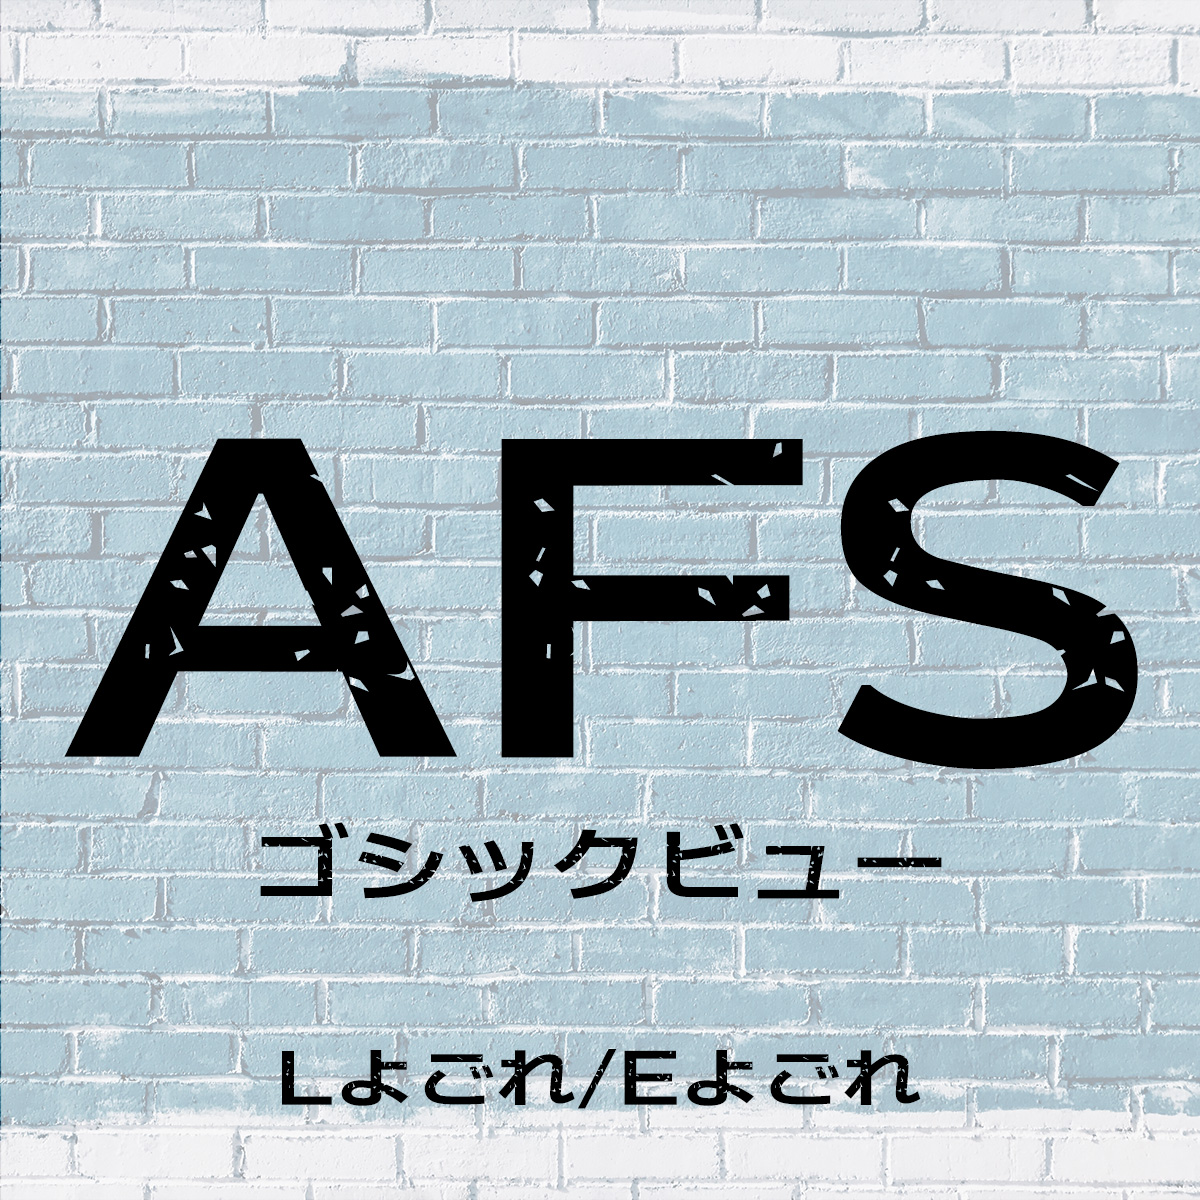 AFSゴシックビュー (よごれL/よごれE)